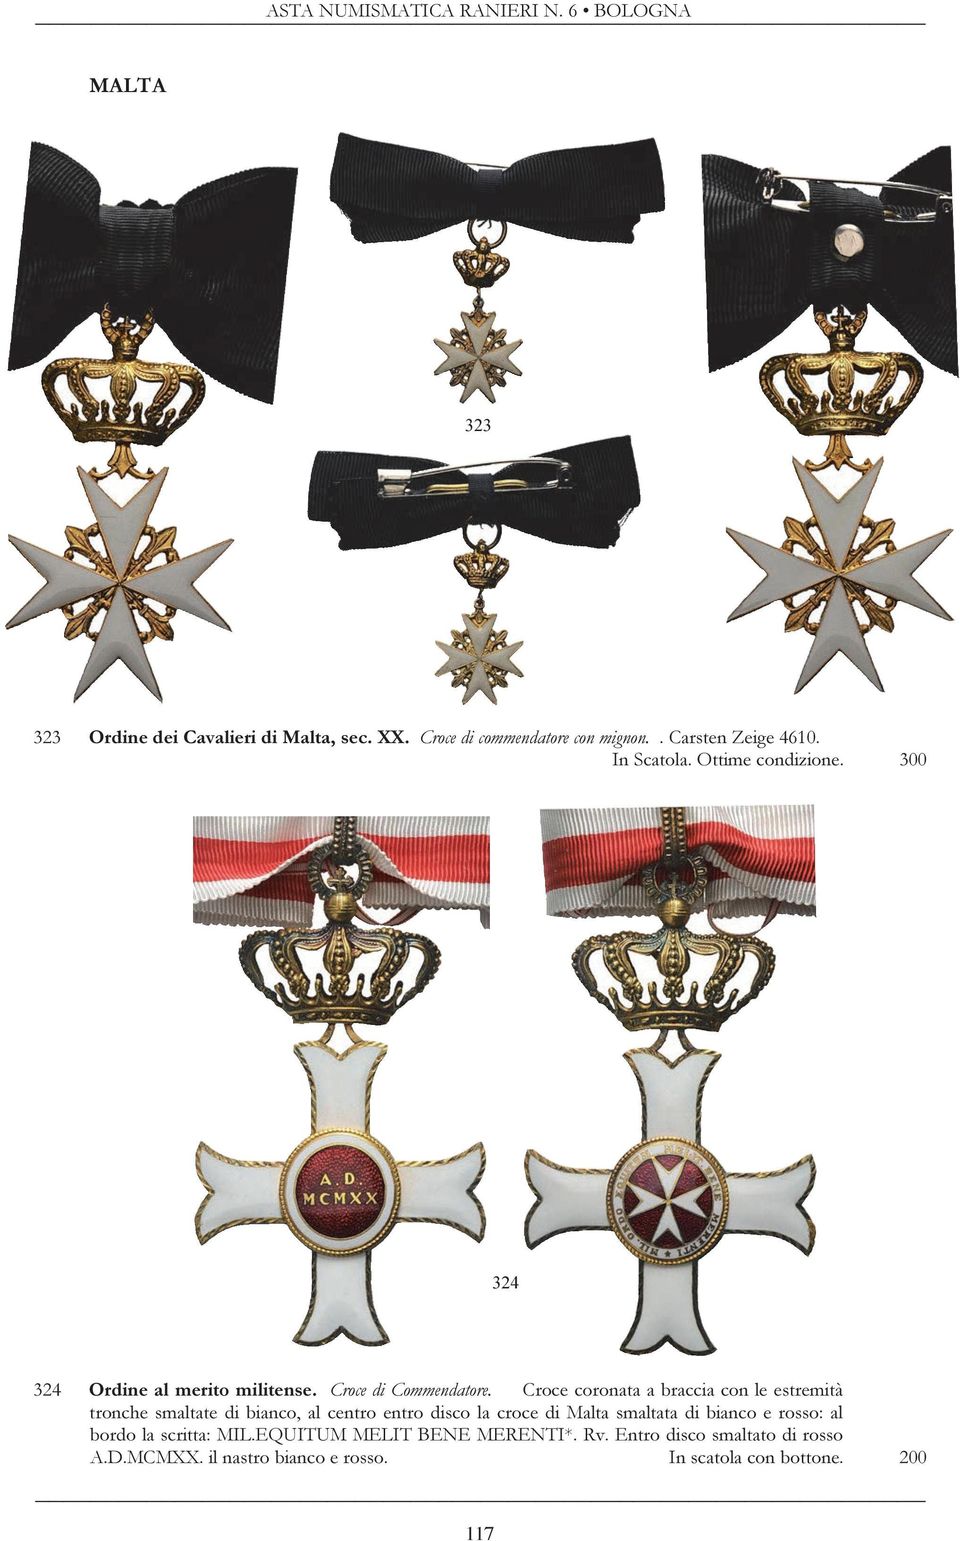 Croce coronata a braccia con le estremità tronche smaltate di bianco, al centro entro disco la croce di Malta smaltata di